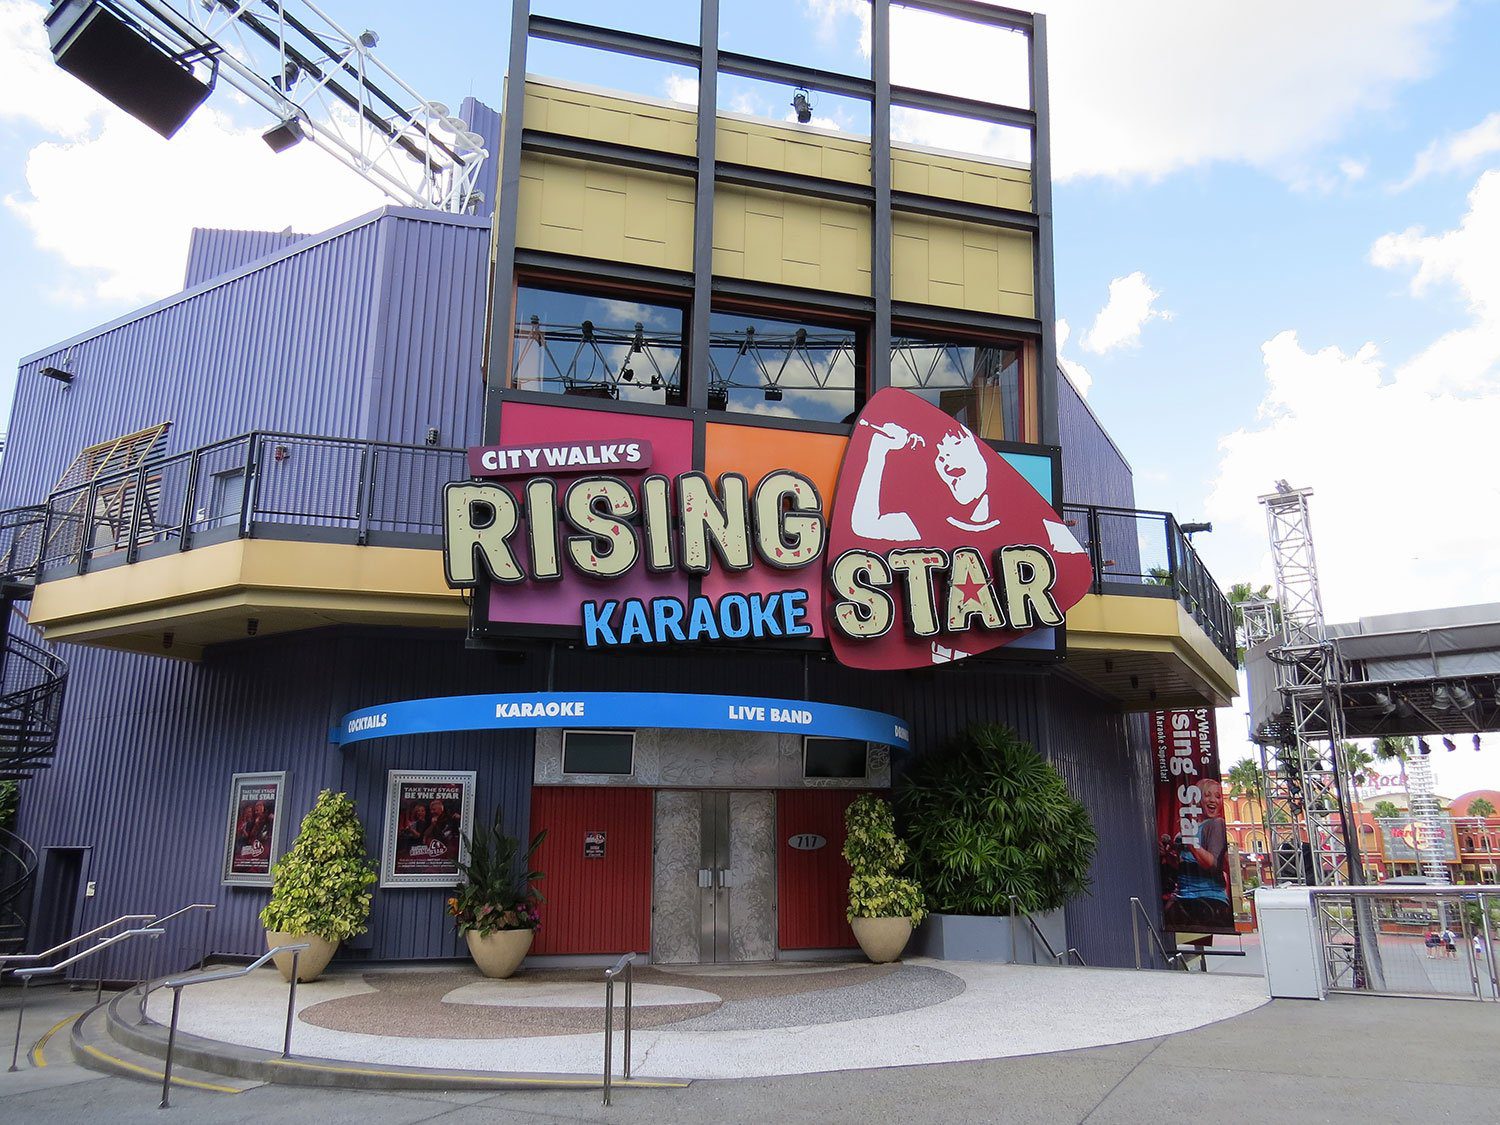 CityWalk's Rising Star Viajando para Orlando